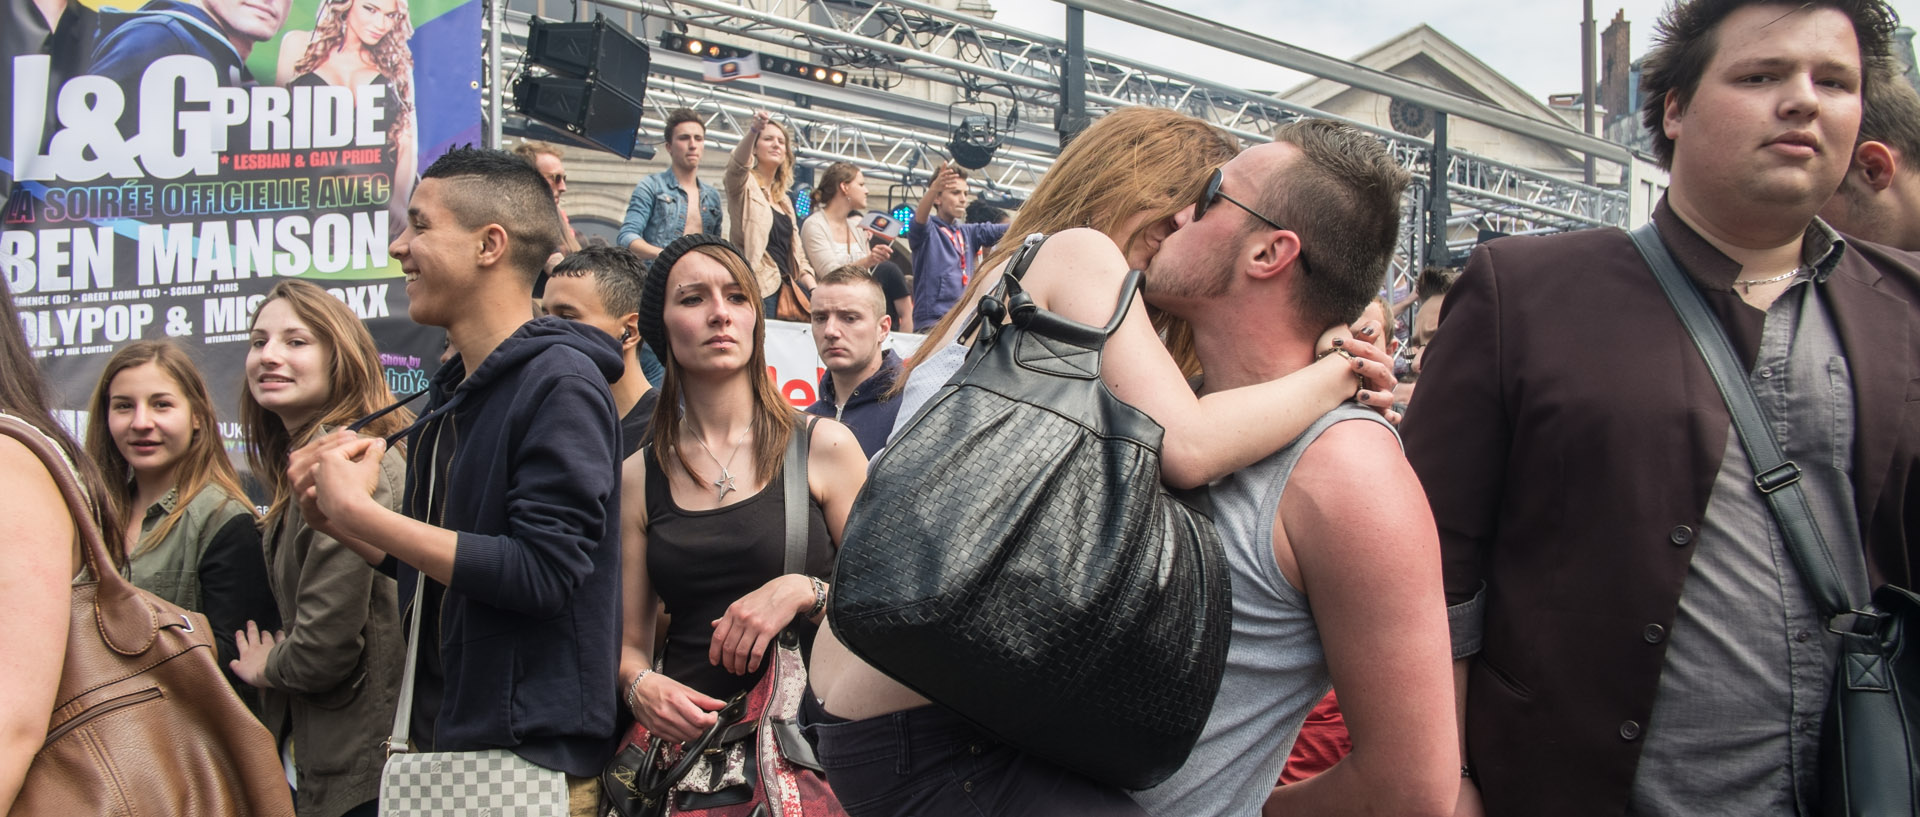 Samedi 1er juin 2013, 15:41, défilé de la lesbian et gay pride, place de la Gare, Lille